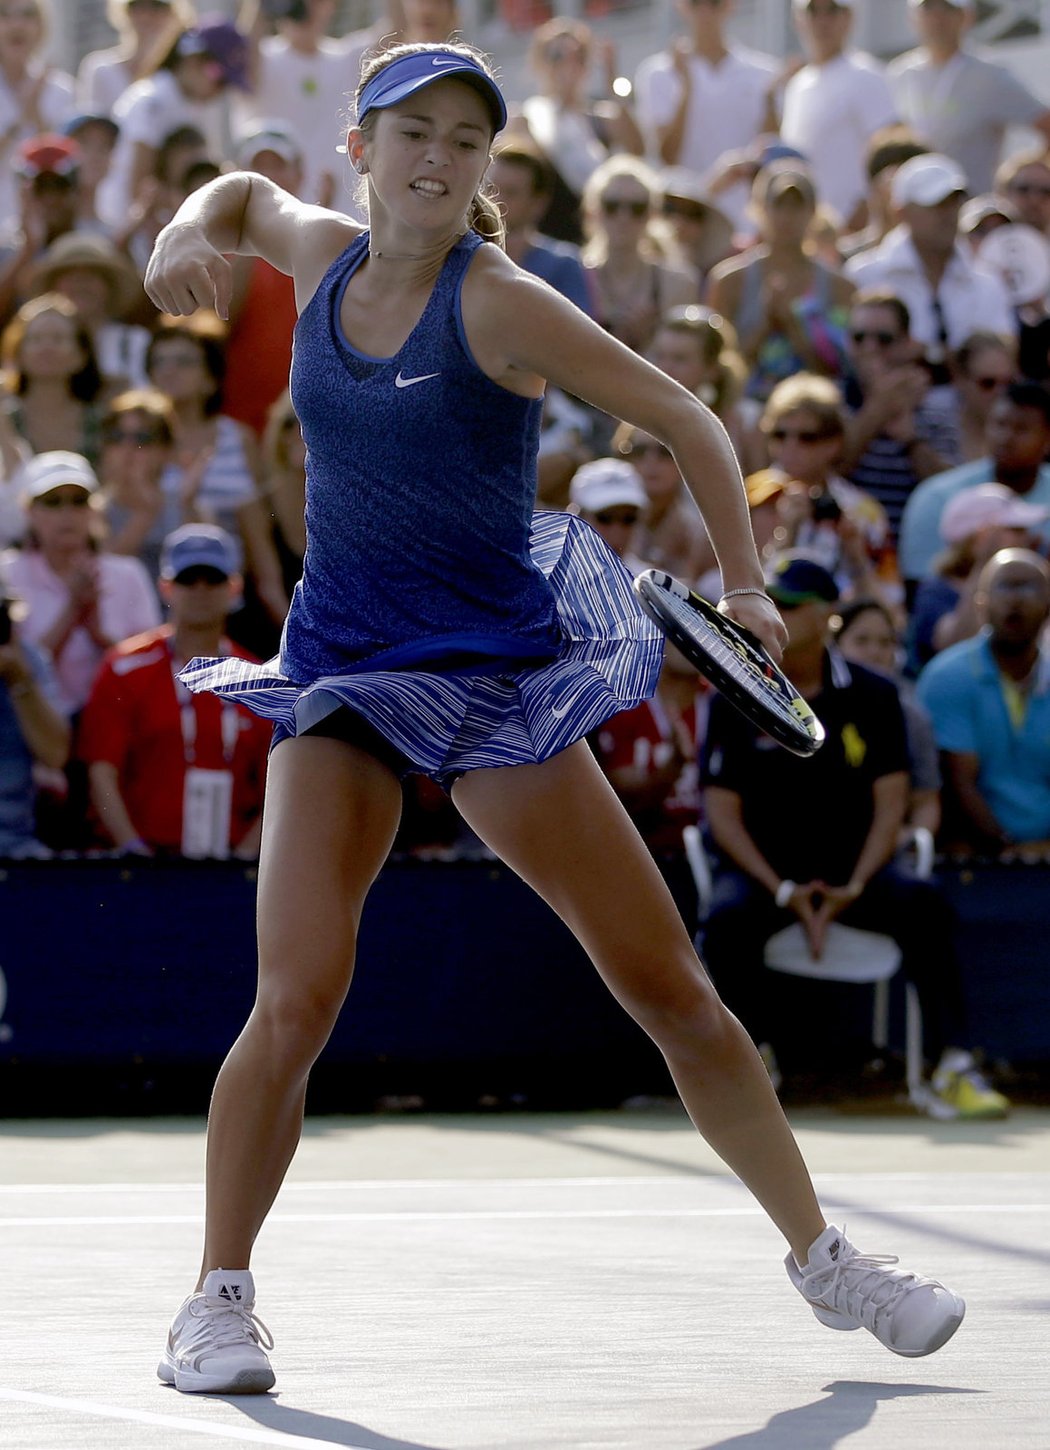 Americká teenagerka Catherine Bellisová šokovala tenisové US Open. Až 1208. hráčka světa, které je teprve 15 let, porazila v prvním kole v New Yorku dvanáctou nasazenou Dominiku Cibulkovou ze Slovenska 6:1, 4:6 a 6:4.